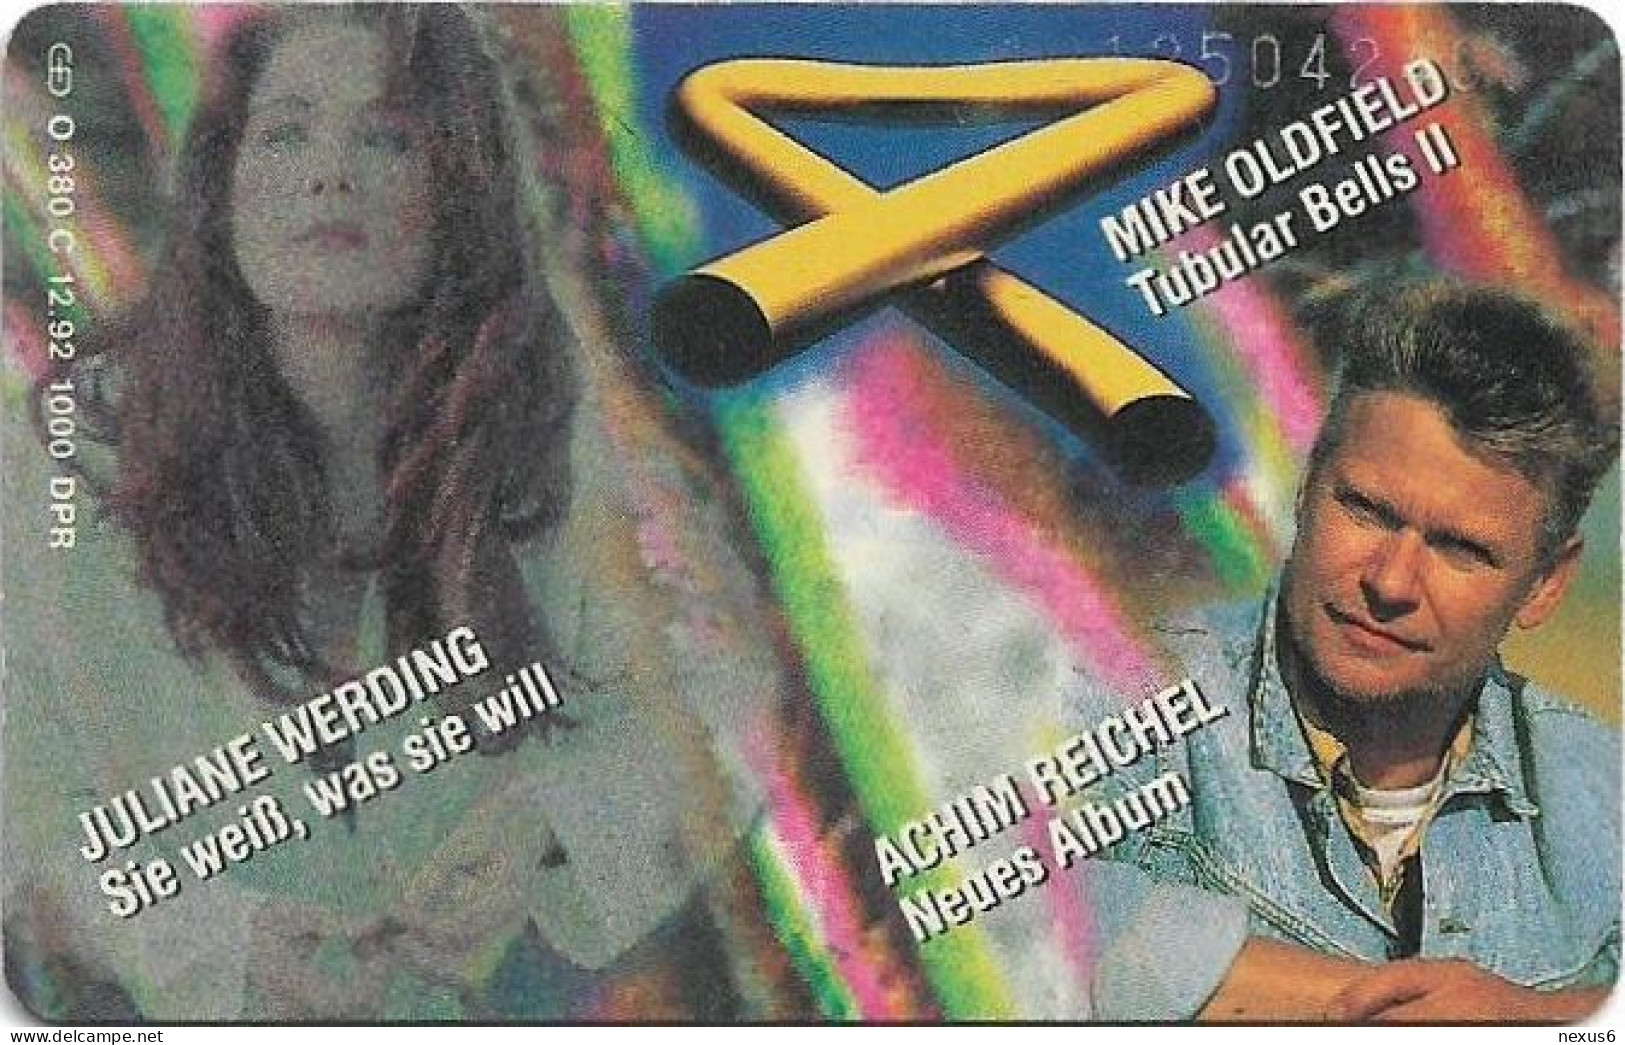 Germany - WEA Musik 13 - Juliane Werding, Mike Oldfield, Achim Reich - O 0380C - 12.1992, 6DM, 1.000ex, Used - O-Series: Kundenserie Vom Sammlerservice Ausgeschlossen